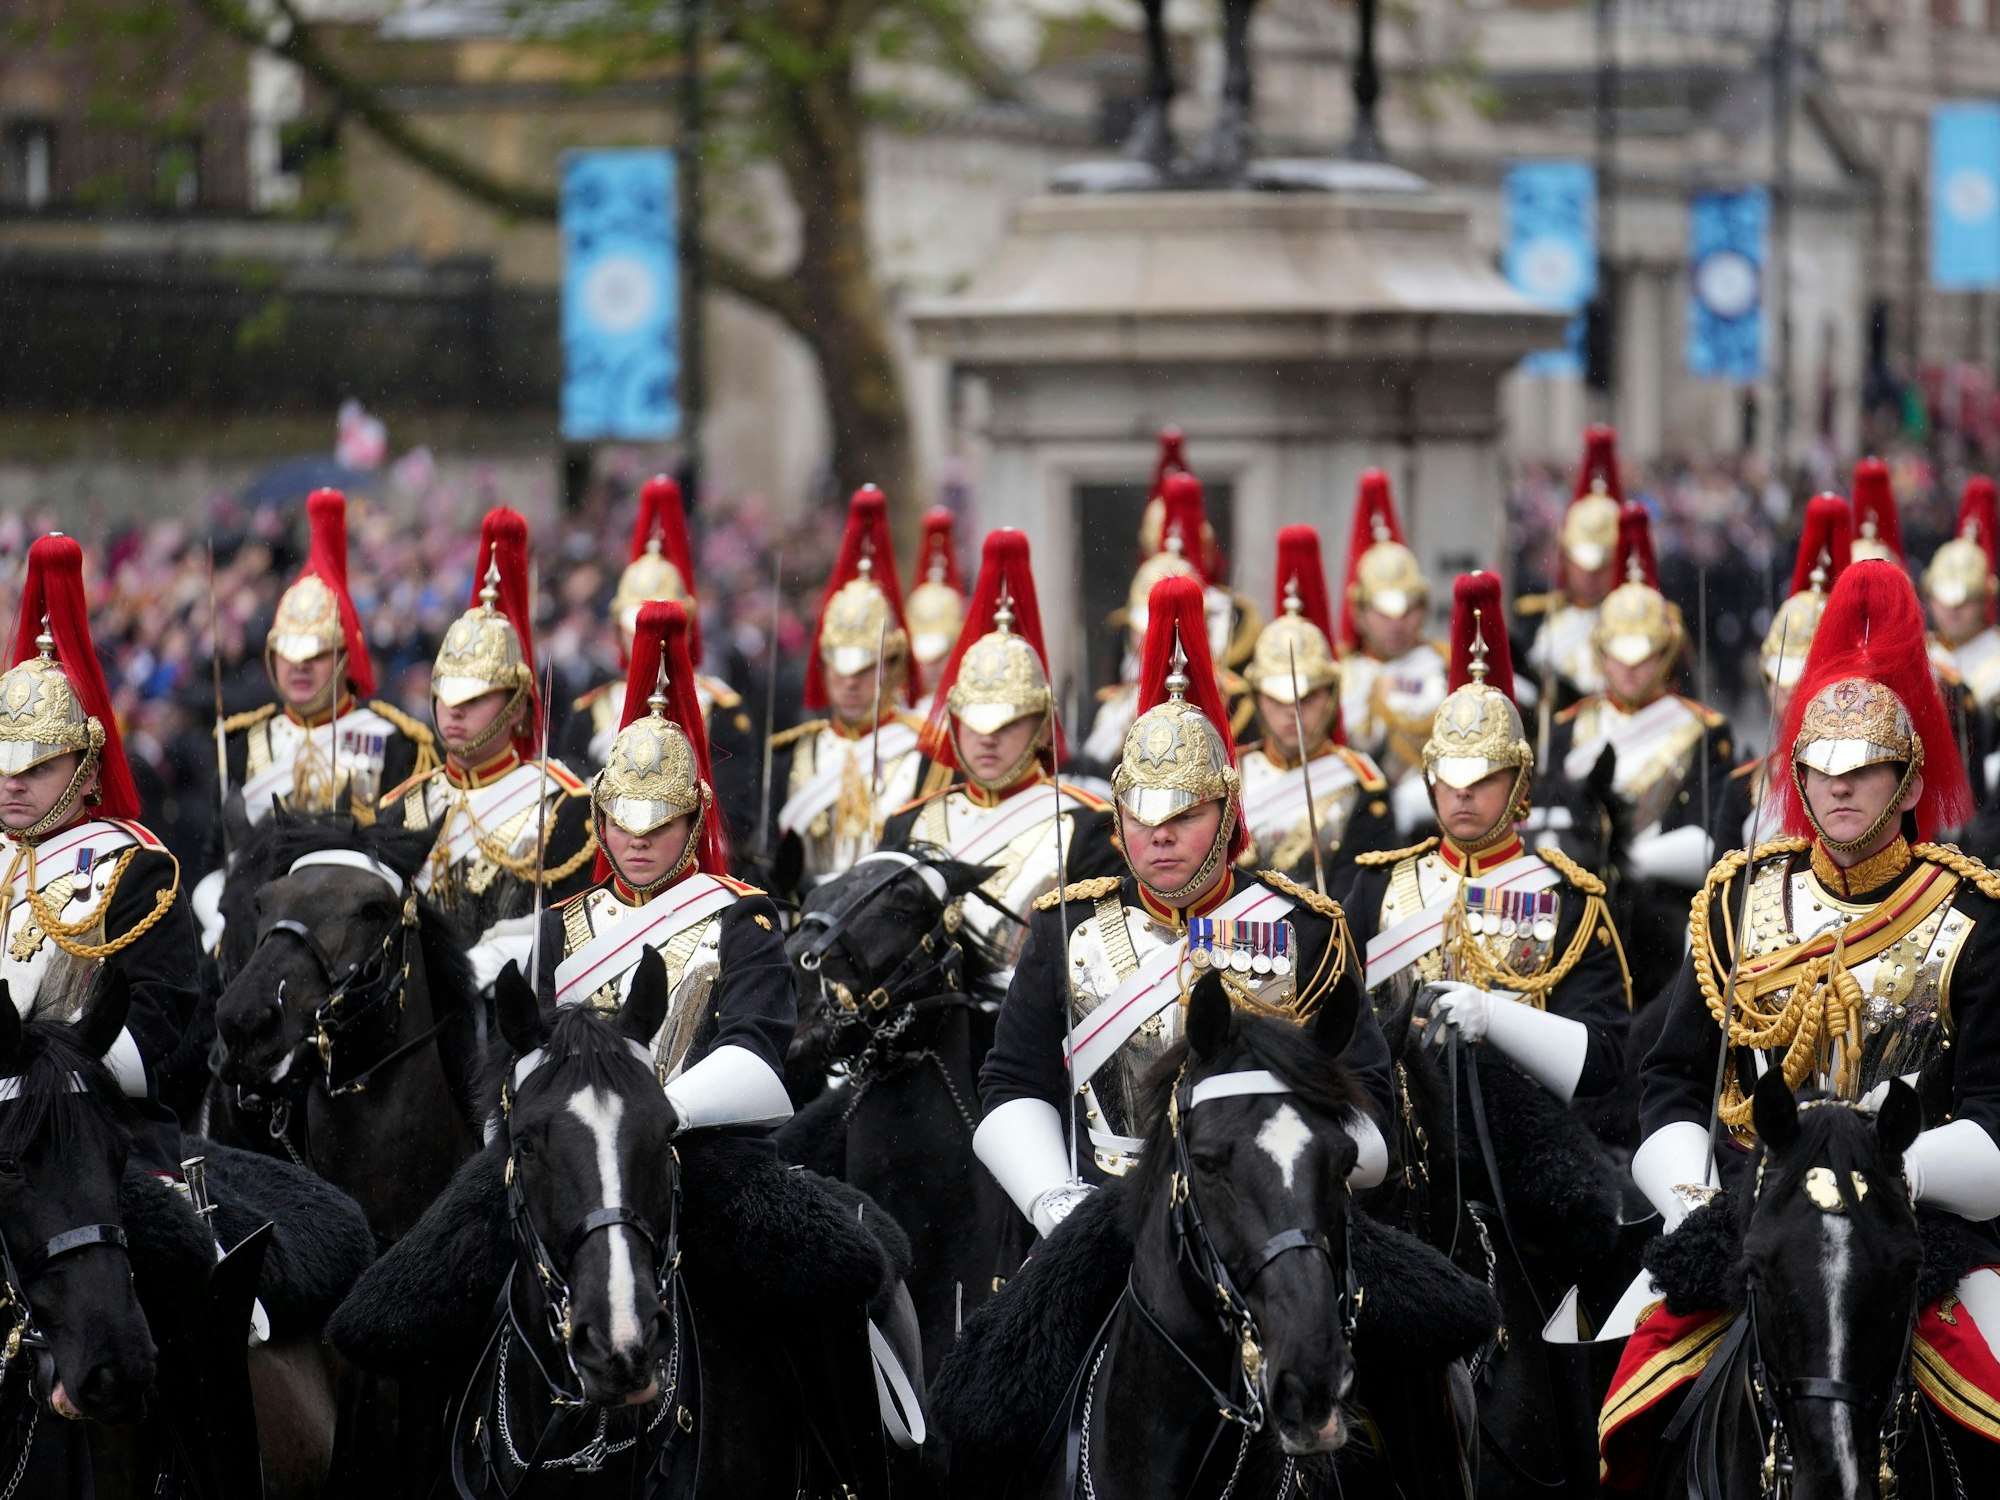 Reiter in Uniform reiten am Tag der Krönung des britischen Königs Charles III. auf der Straße.